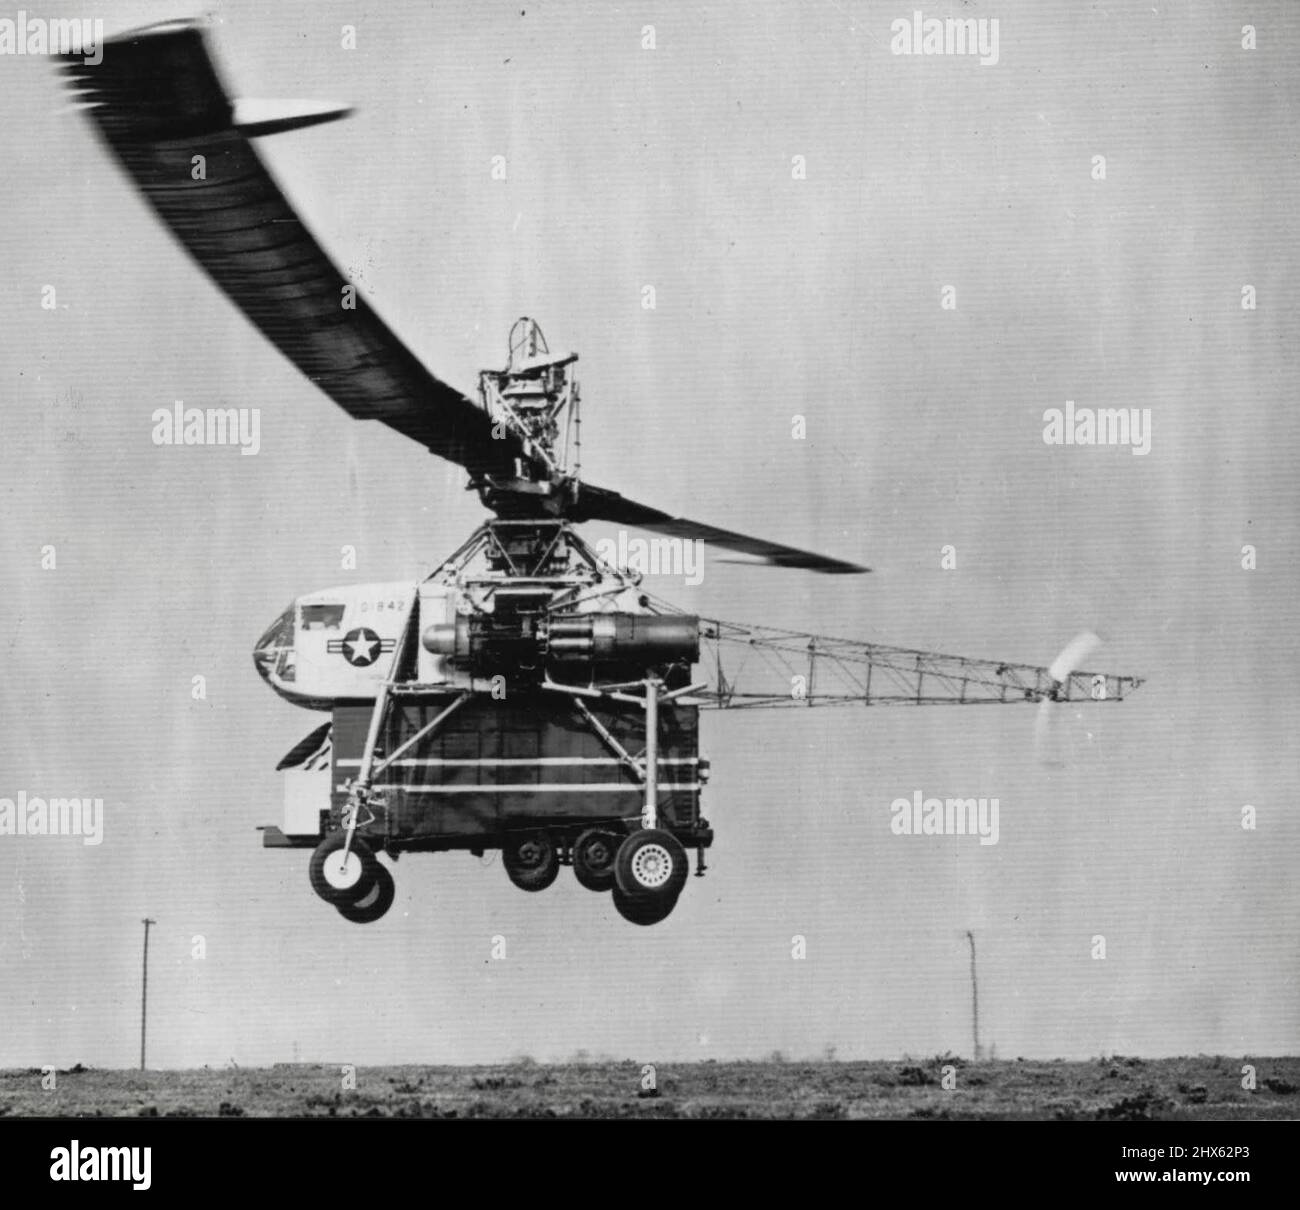 Hughes Helicopter choisit un record de charge -- un hélicoptère Air Force XH-17 construit par la compagnie Hughes Aircraft termine ici son programme d'essais en ramassant une camionnette Air Force d'un poids de 7800 livres. Les ingénieurs de Hughes croient qu'il s'agit de la charge la plus importante et la plus lourde jamais soulevée par hélicoptère. Le XH-17 est considéré comme le plus grand hélicoptère au monde. 14 décembre 1955. (Photo par AP Wirephoto). Banque D'Images